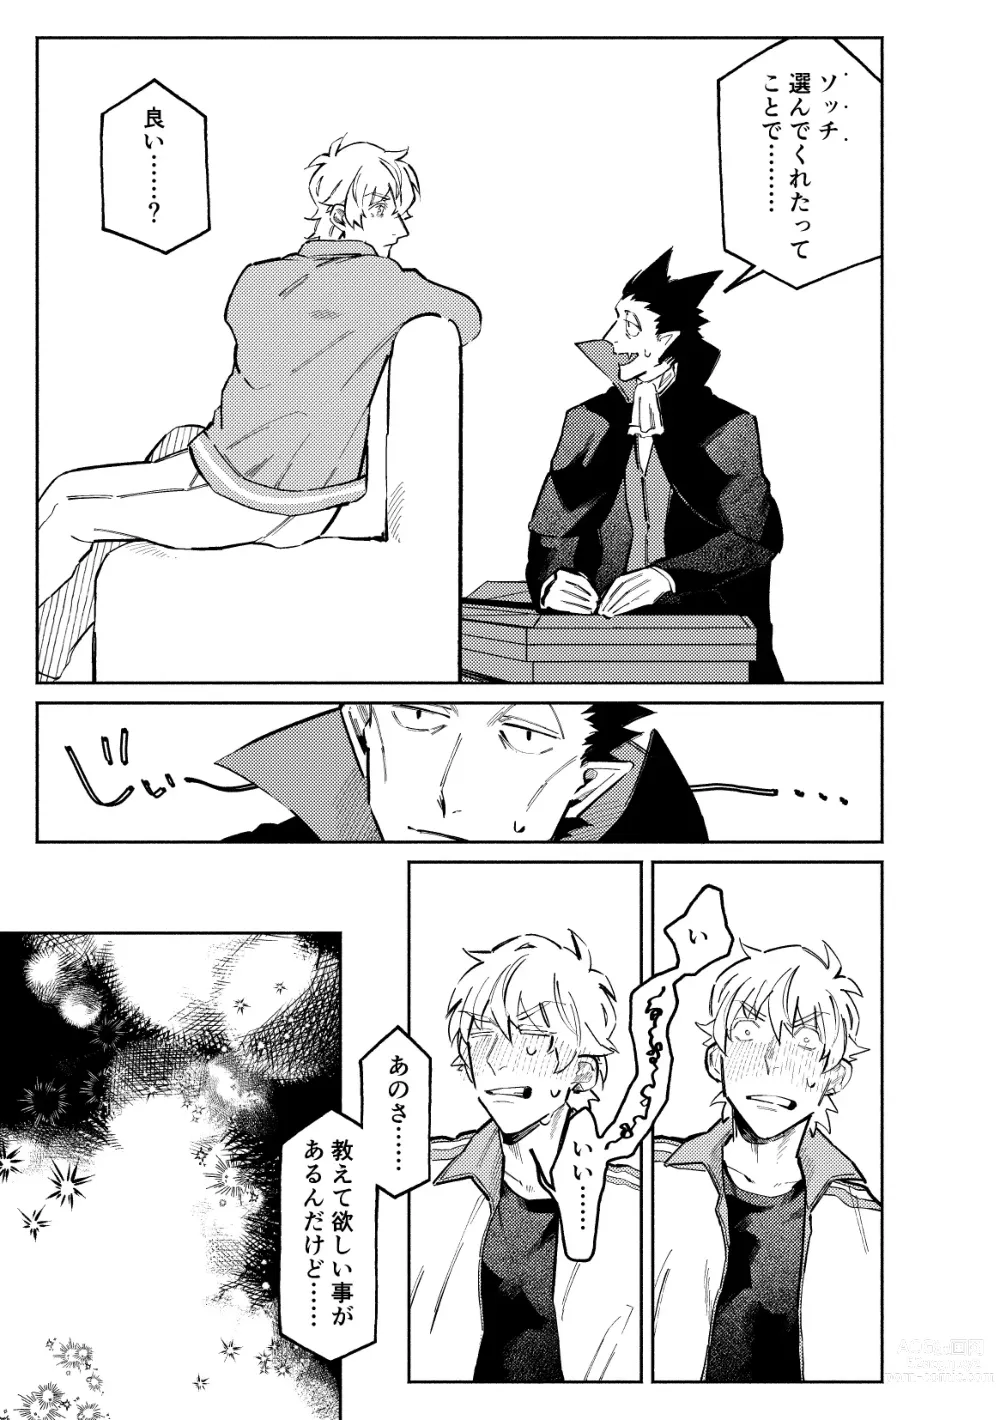 Page 7 of doujinshi 1stDRxxx